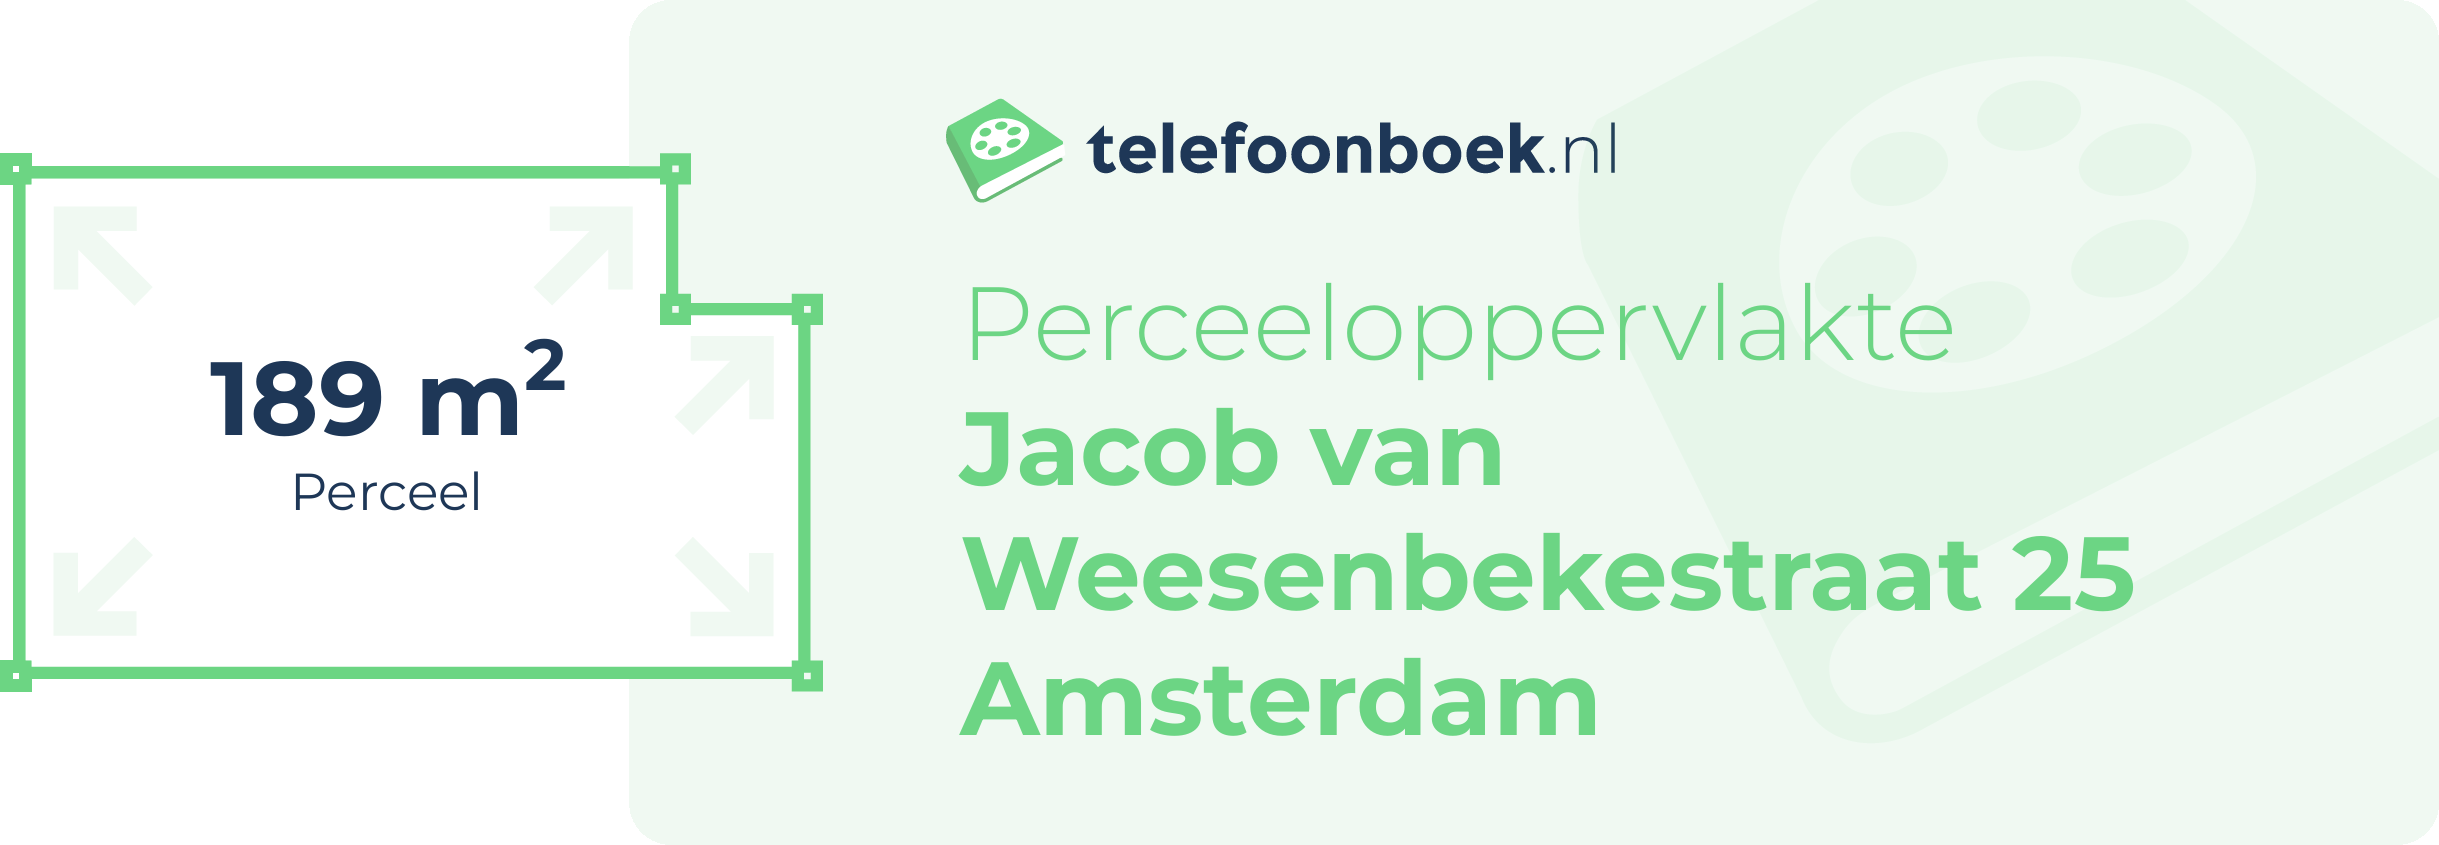 Perceeloppervlakte Jacob Van Weesenbekestraat 25 Amsterdam